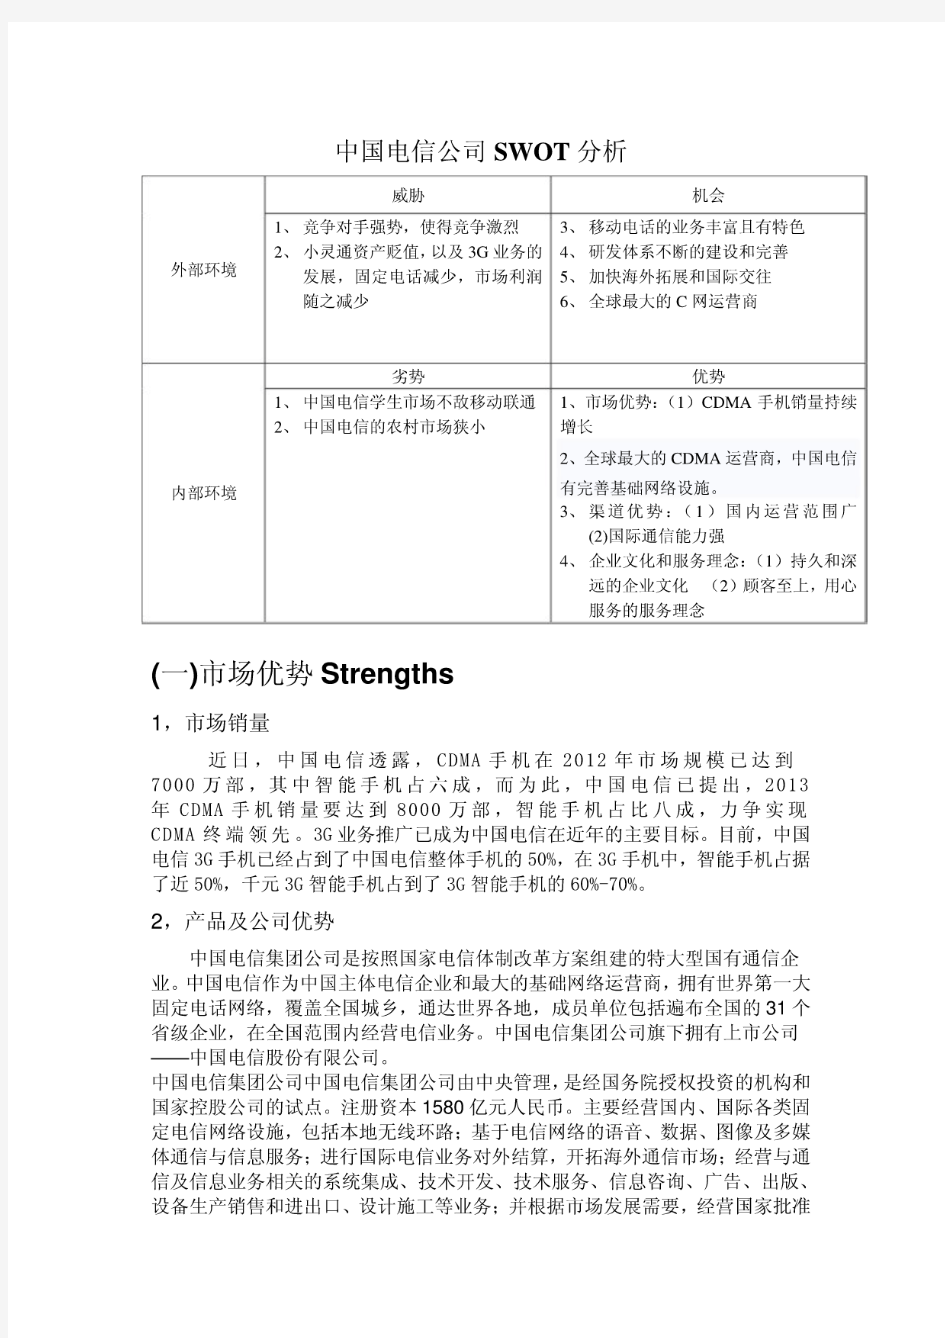 中国电信公司SWOT分析